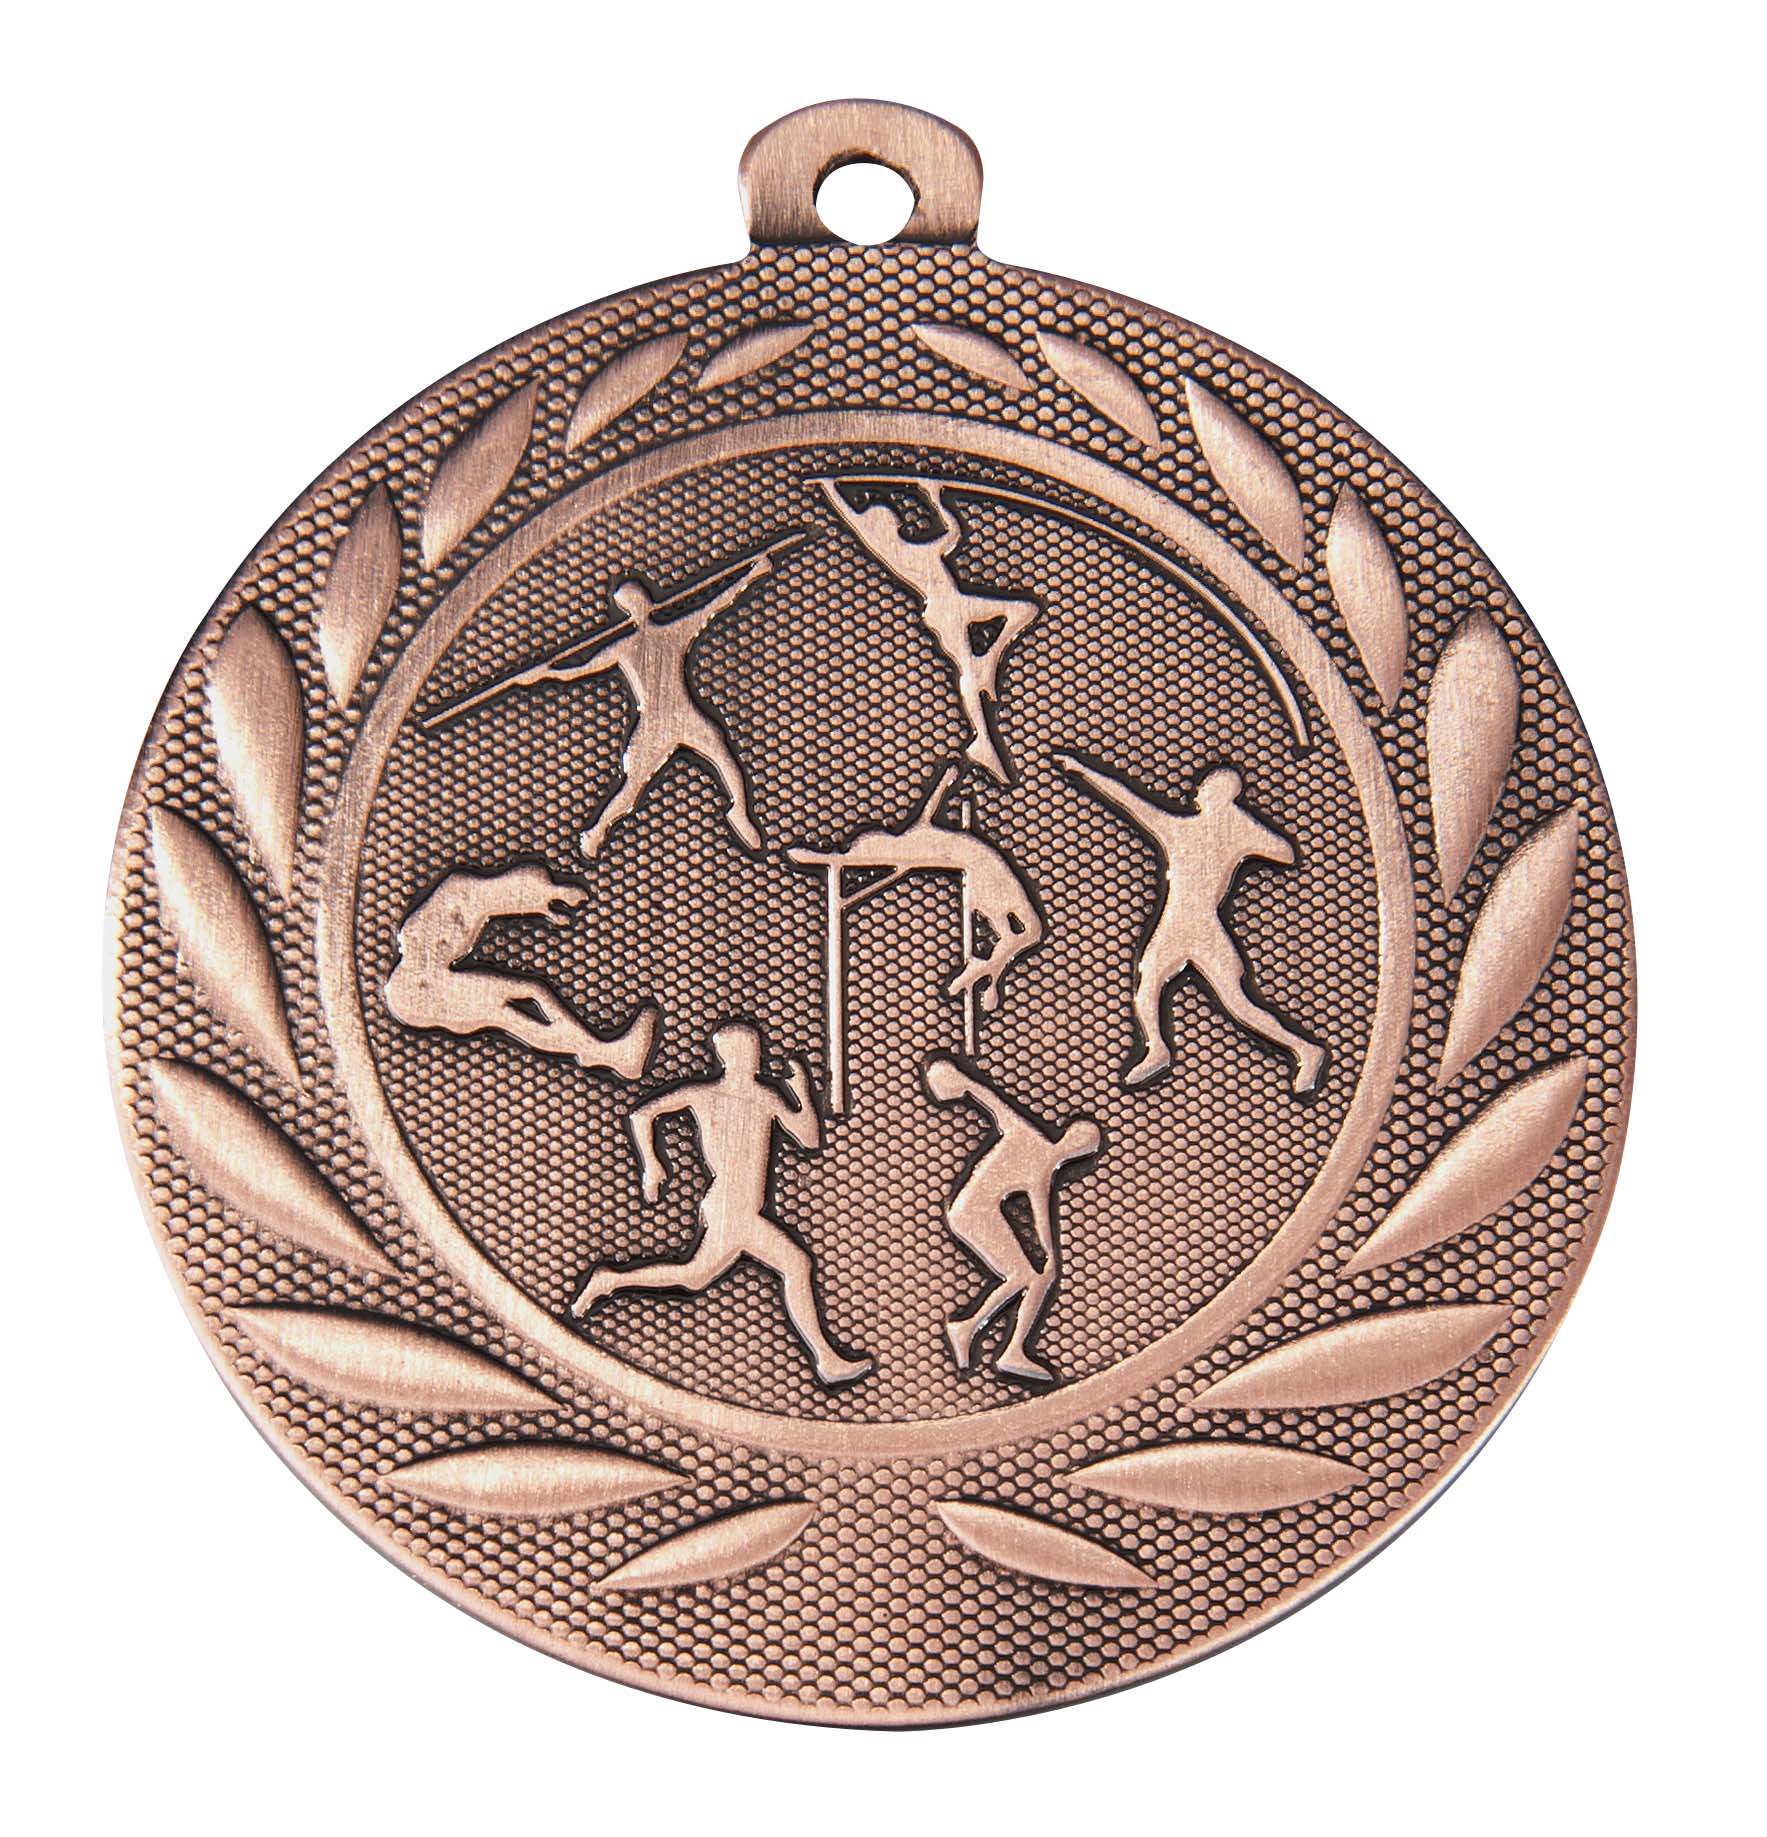 Leichtathletik-Medaille DI5000K inkl. Band und Beschriftung Bronze Unmontiert